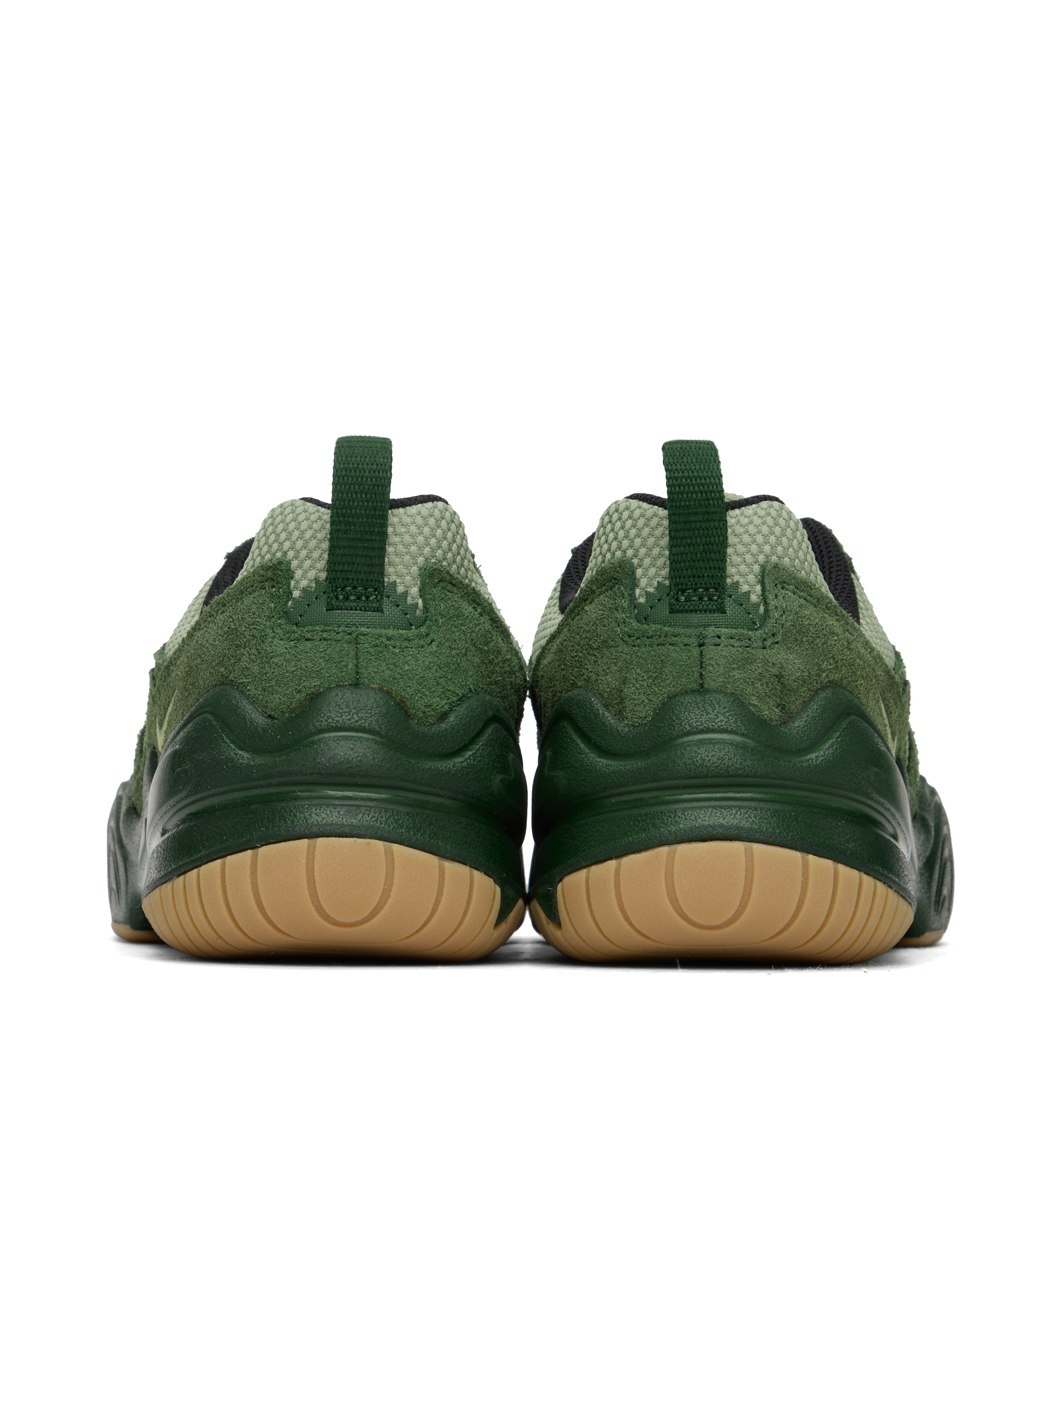 Green Tech Hera Sneakers - 2